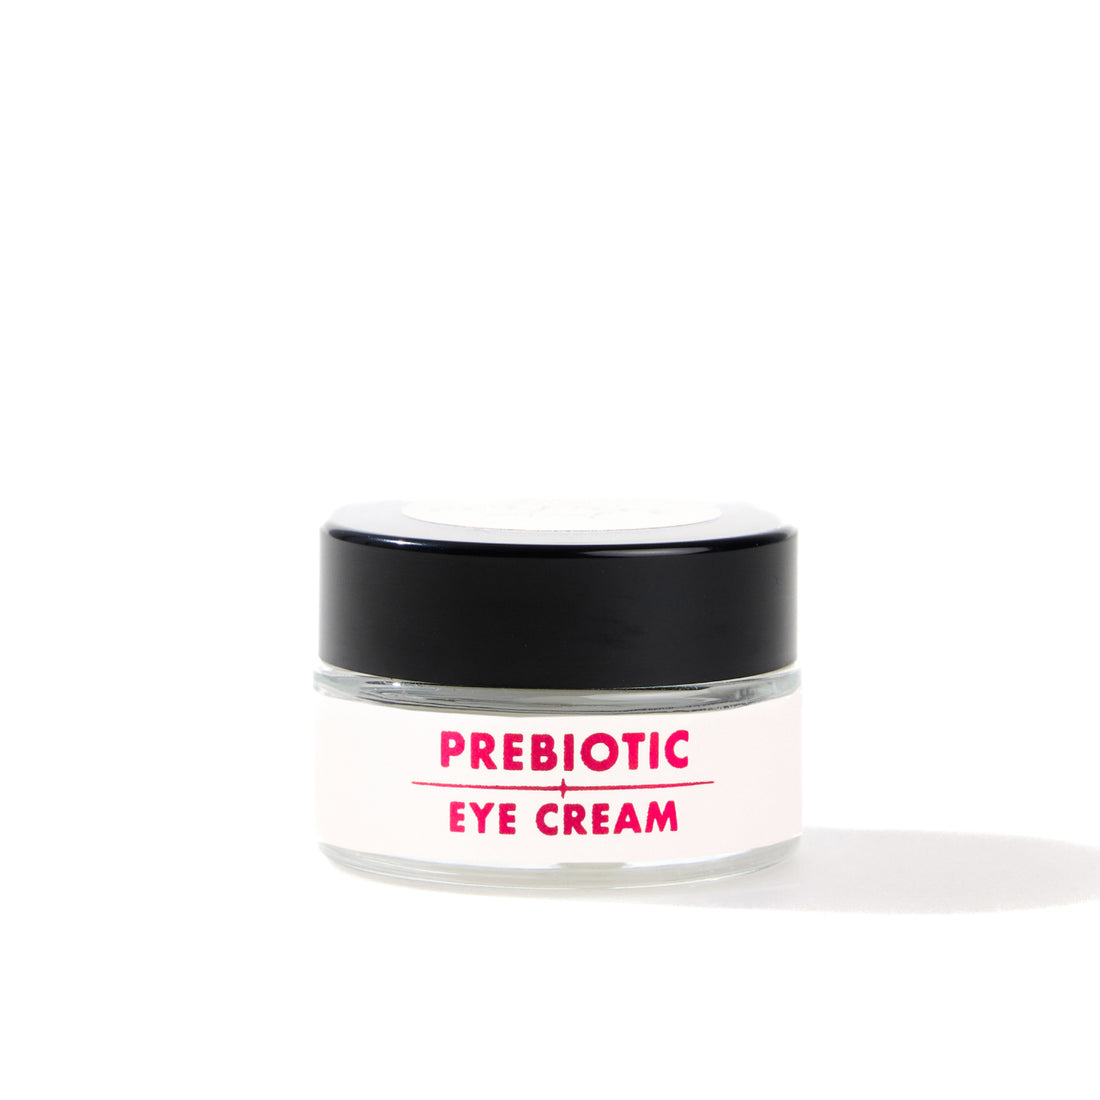 Prebiotic Eye Cream Yoğun Nemlendirici Etki Sunan Prebiyotik Göz Kremi